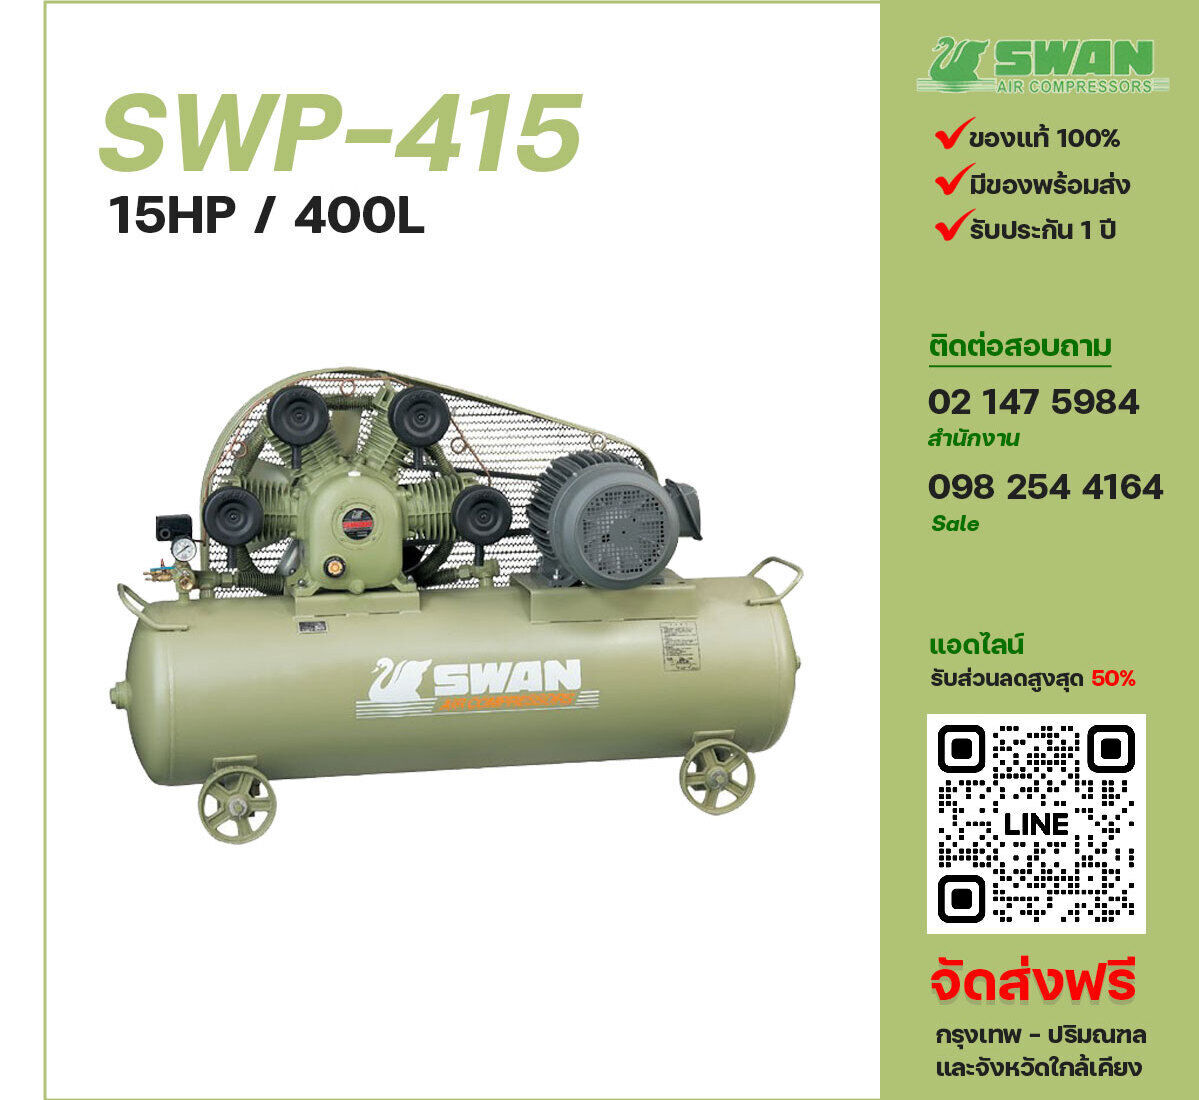 ปั๊มลมสวอน SWAN SWP-415 380V ปั๊มลมลูกสูบ ขนาด 4 สูบ 15 แรงม้า 400 ลิตร SWAN พร้อมมอเตอร์ ไฟ 380V ส่งฟรี กรุงเทพฯ-ปริมณฑล รับประกัน 1 ปี